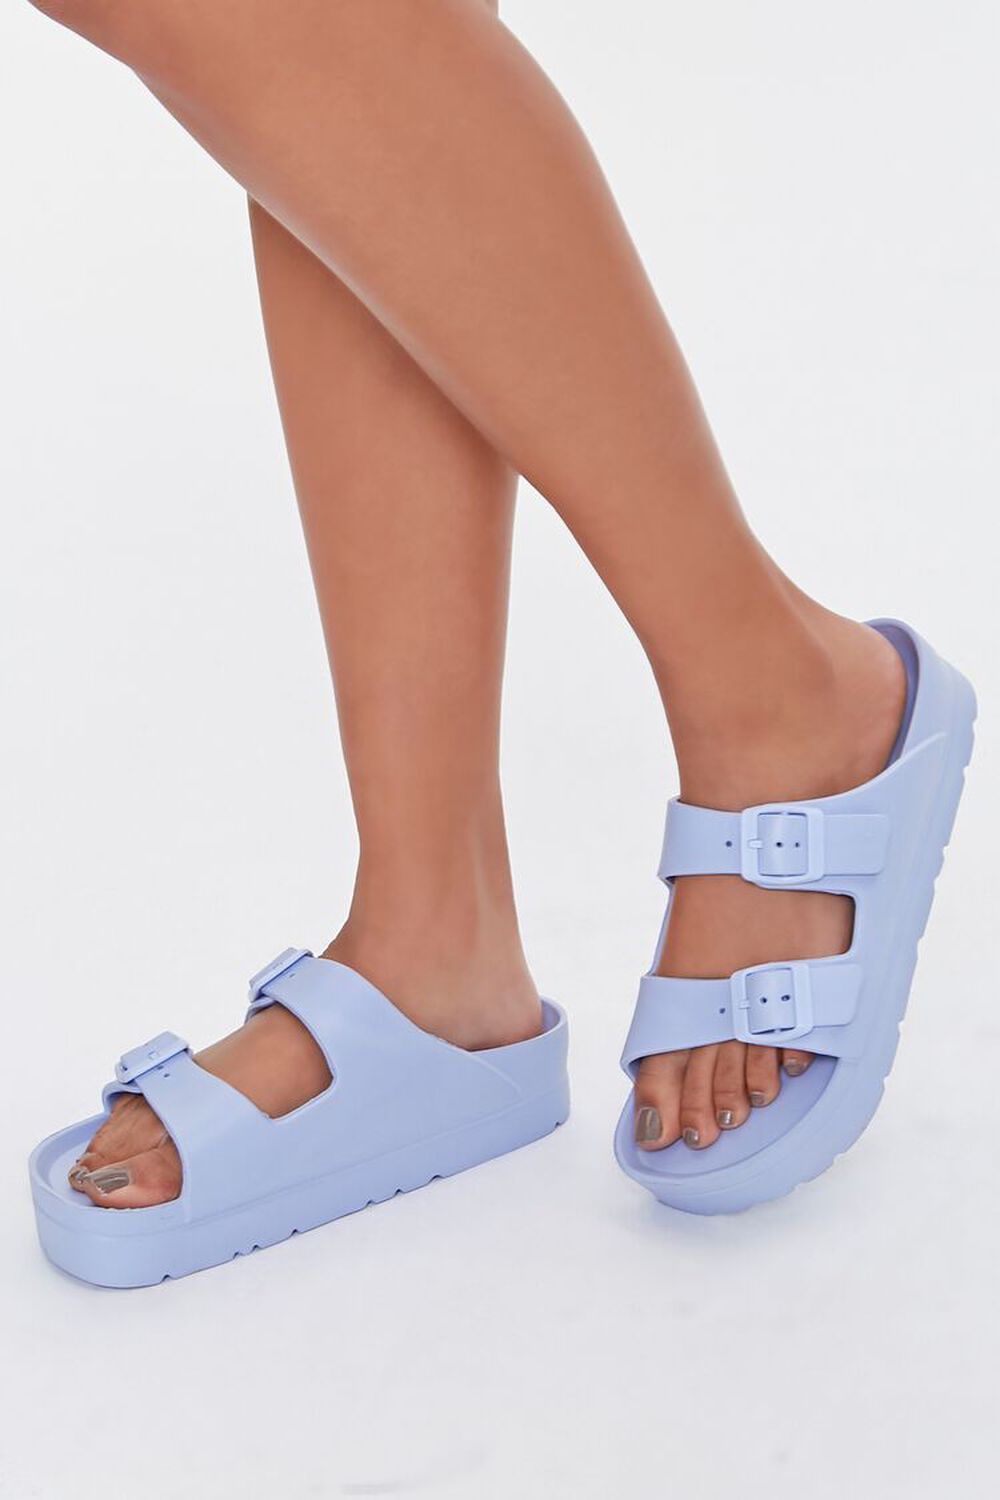 BLUE Buckled Flatform Sandals, image 1